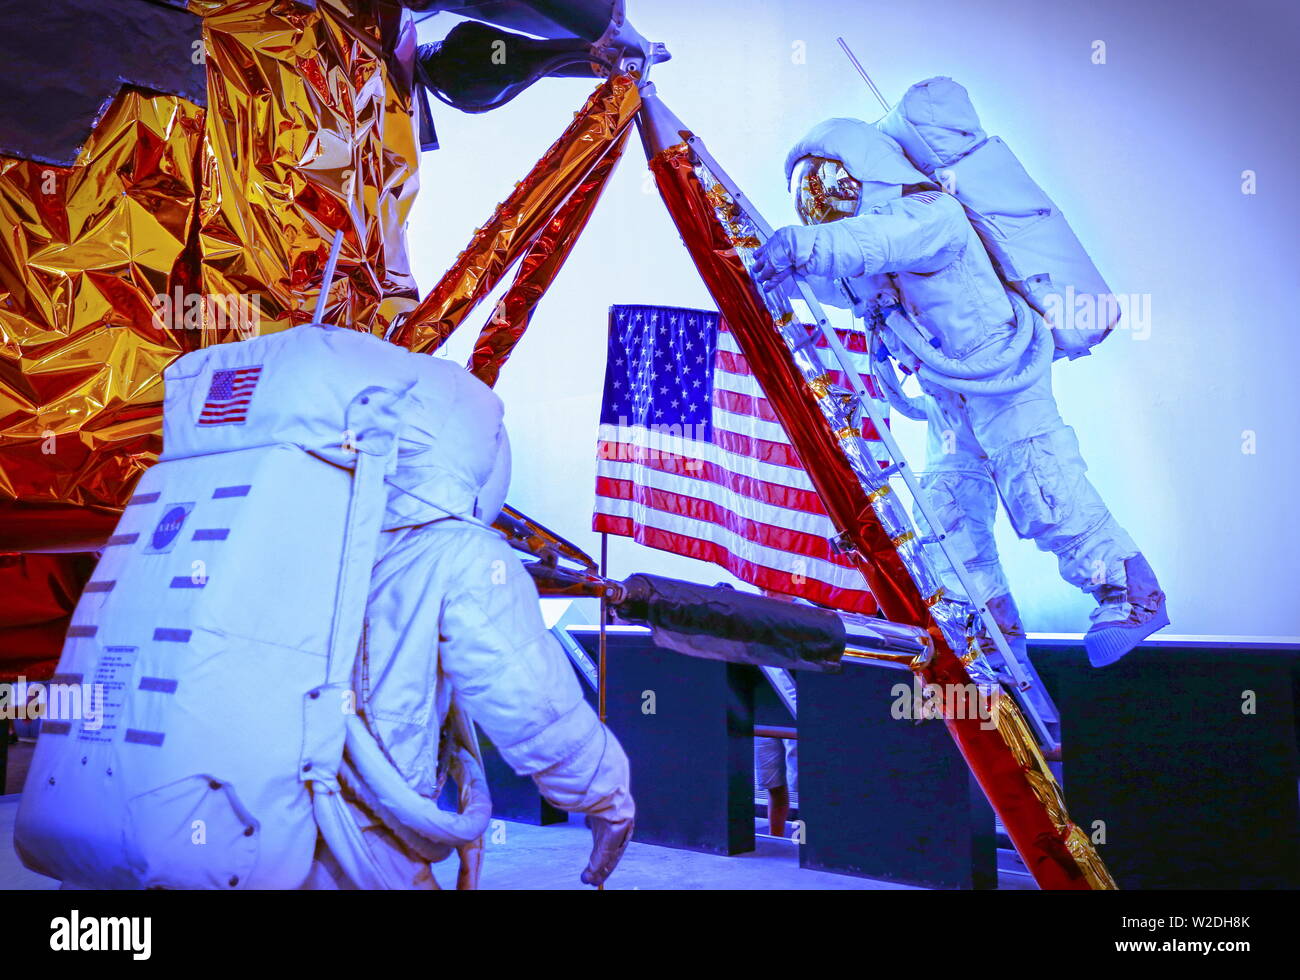 Washington DC, Stati Uniti d'America; Agosto 2015: una scena del famoso programma Apollo, due manichini astronauti escono dalle loro atterraggio lunare e a camminare sulla luna, un Foto Stock